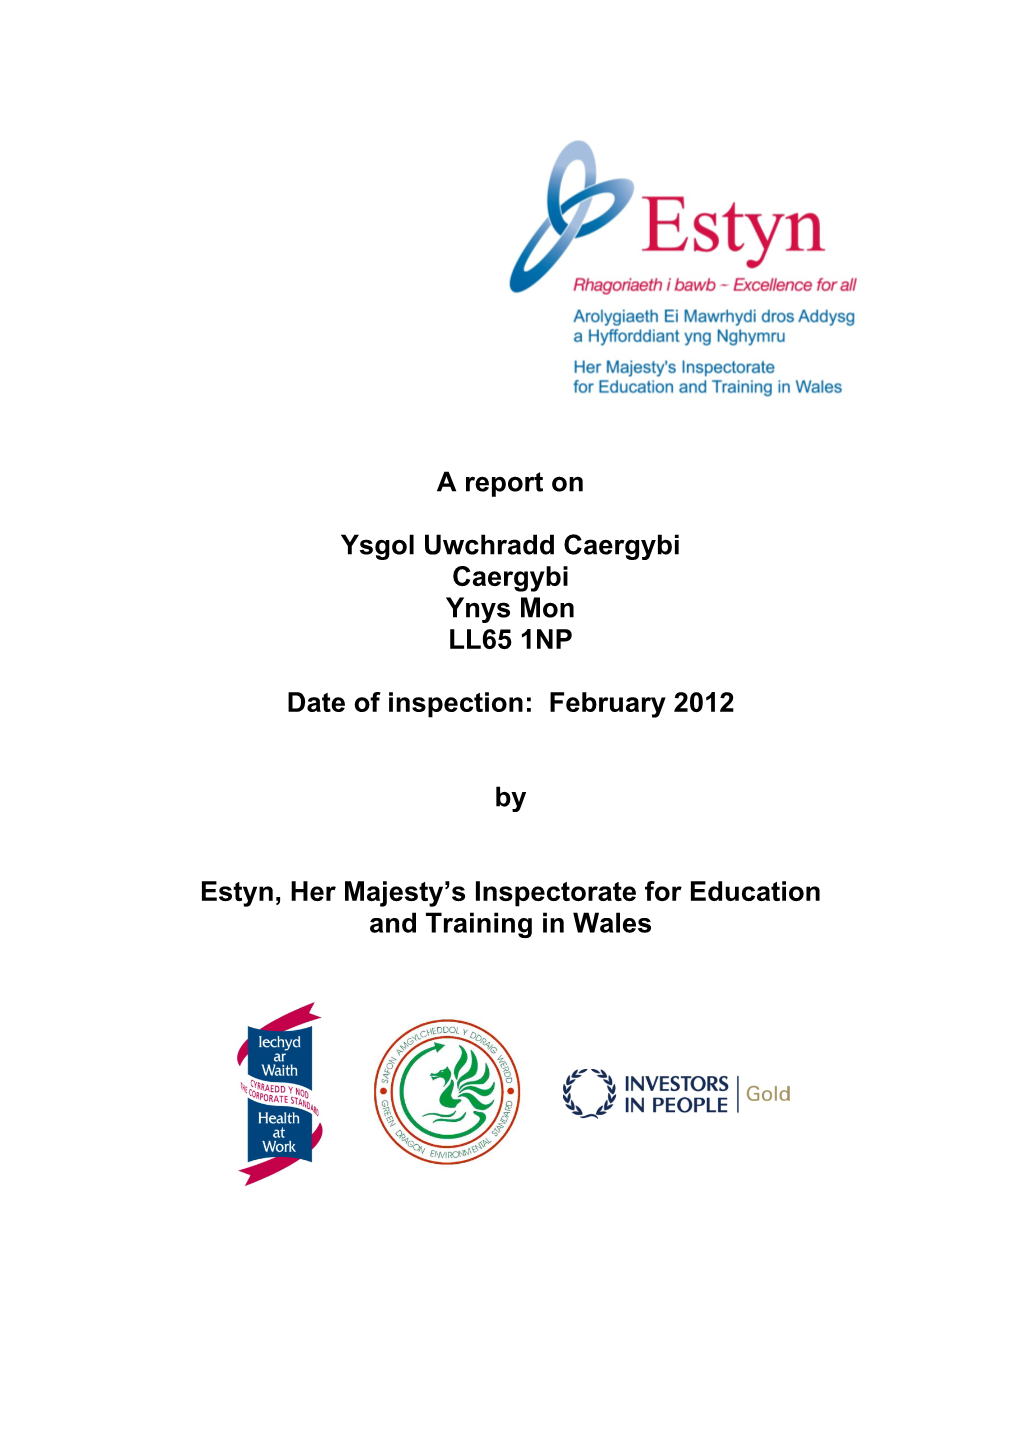 A Report on Ysgol Uwchradd Caergybi Caergybi Ynys Mon LL65